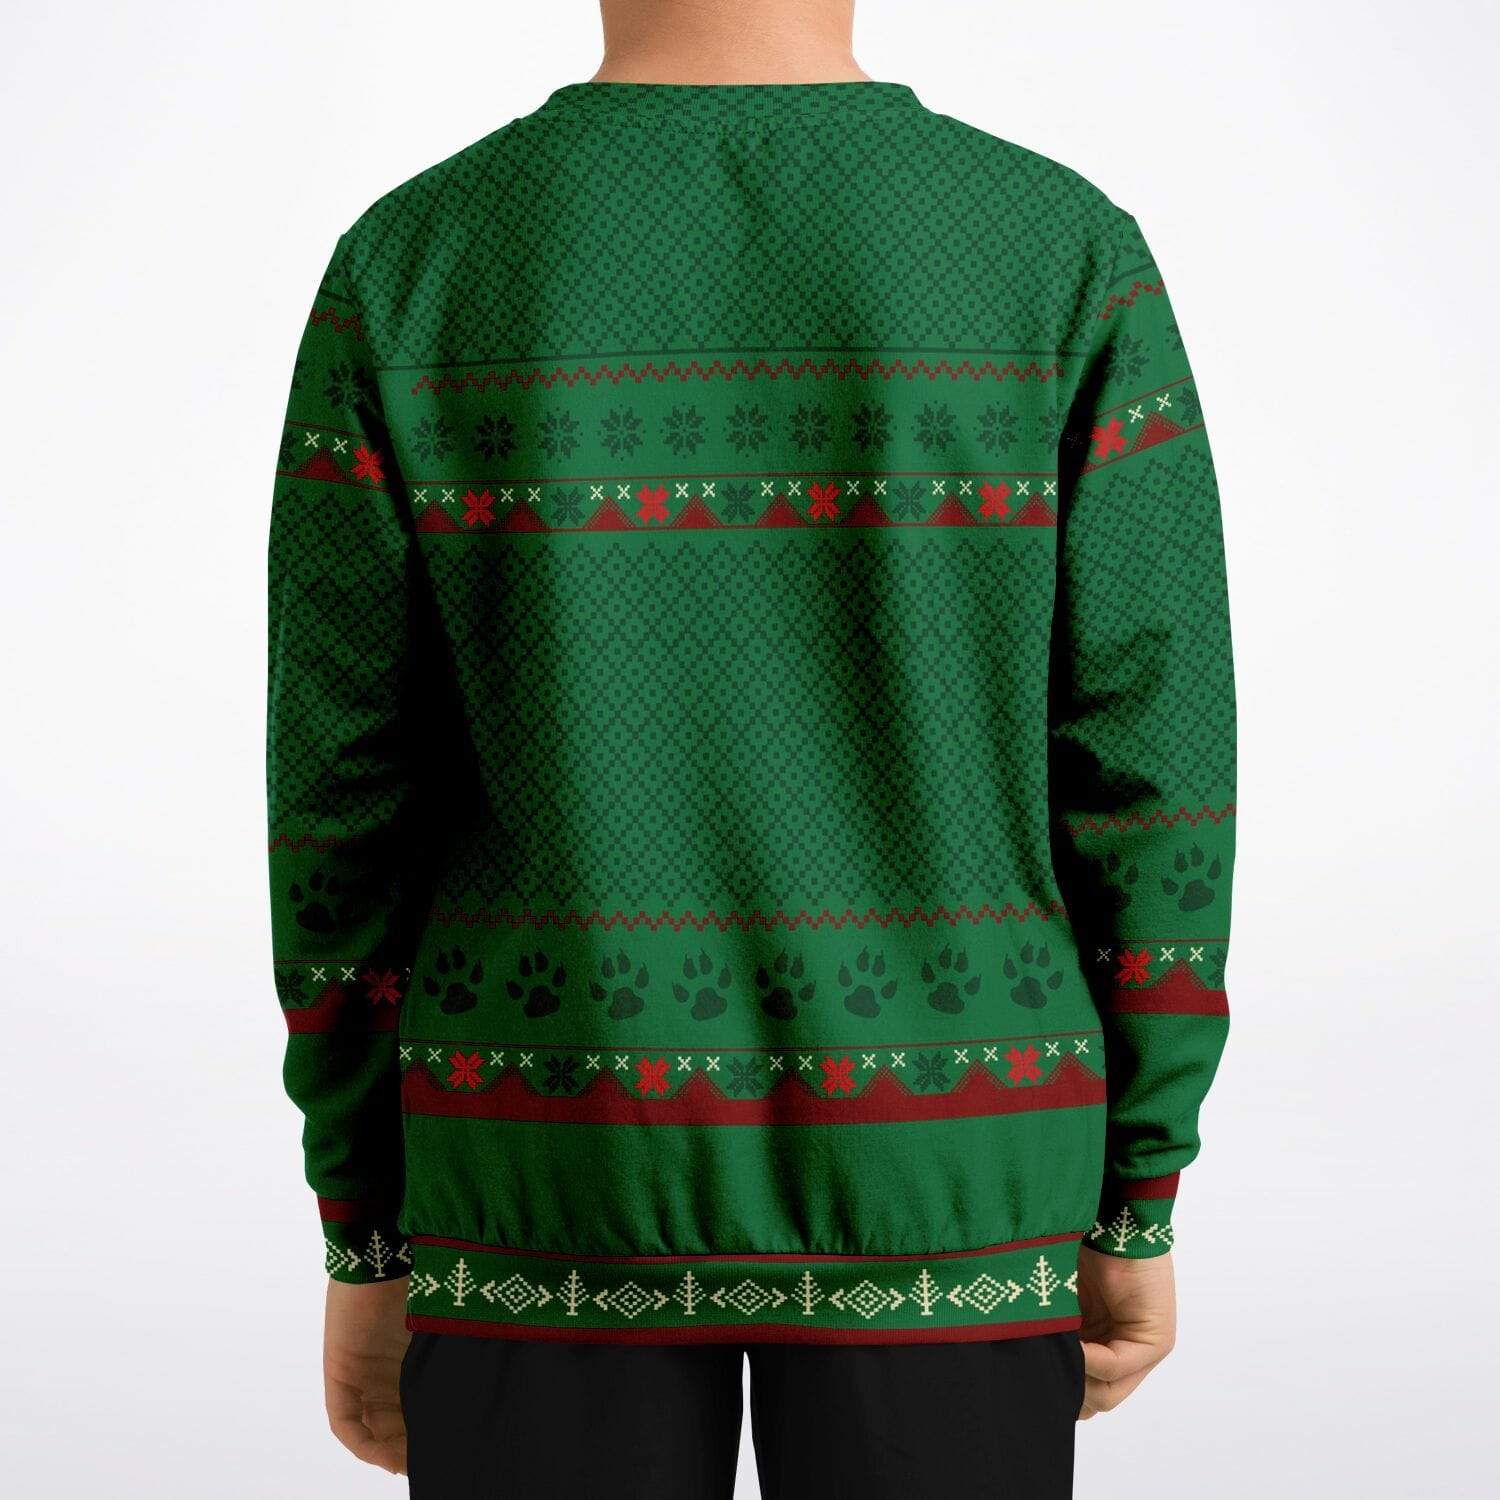 Feliz Navidog - Funny Kids/Youth Dog Lover Ugly Christmas Sweater (Sweatshirt)